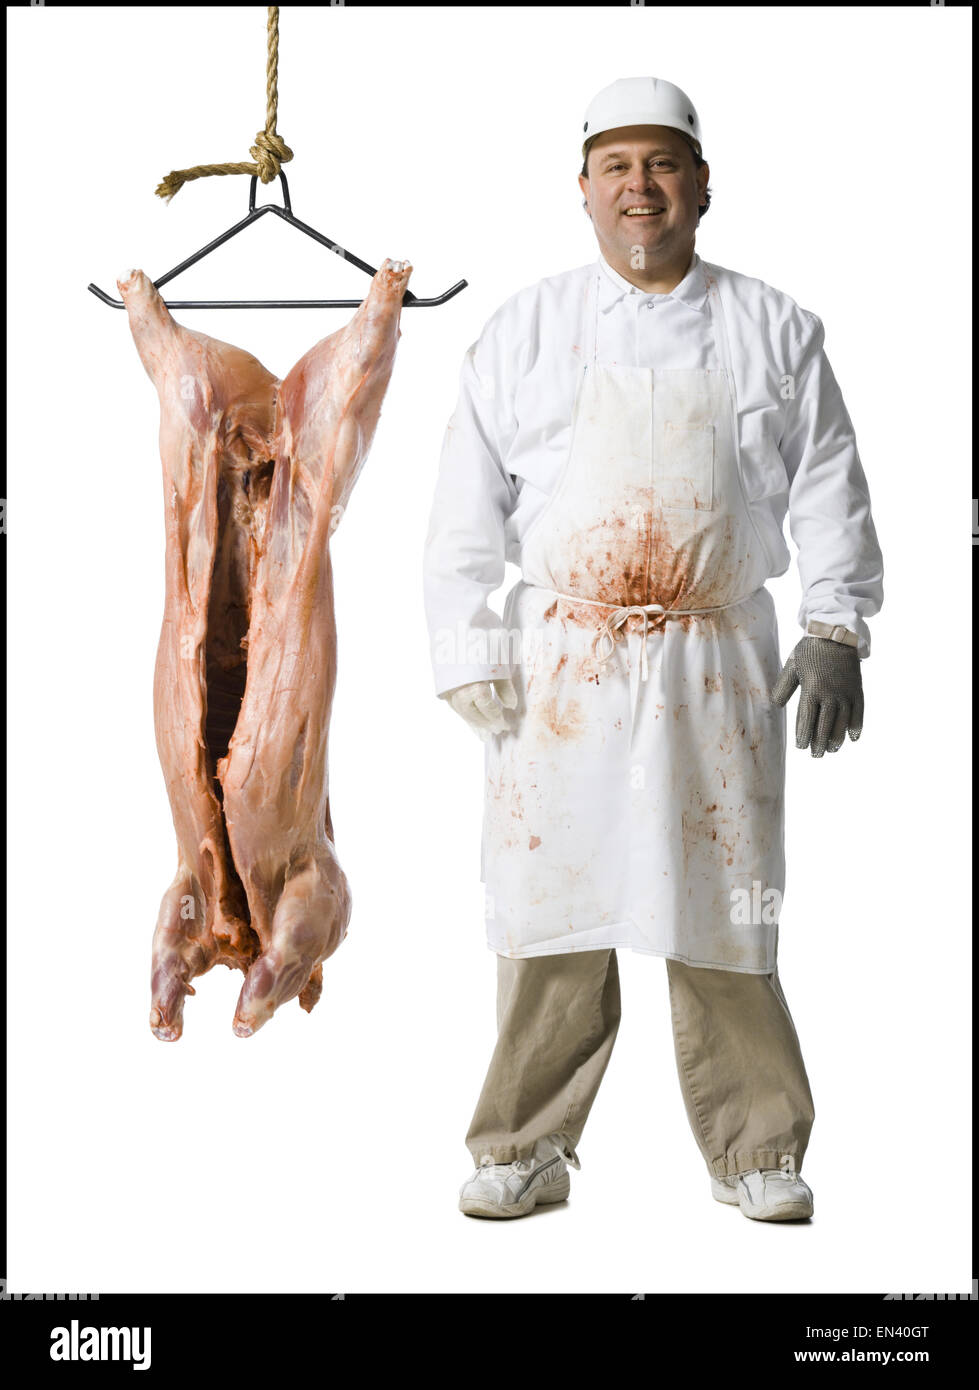 El carnicero de pie con la cuchilla y carcasa colgante Foto de stock